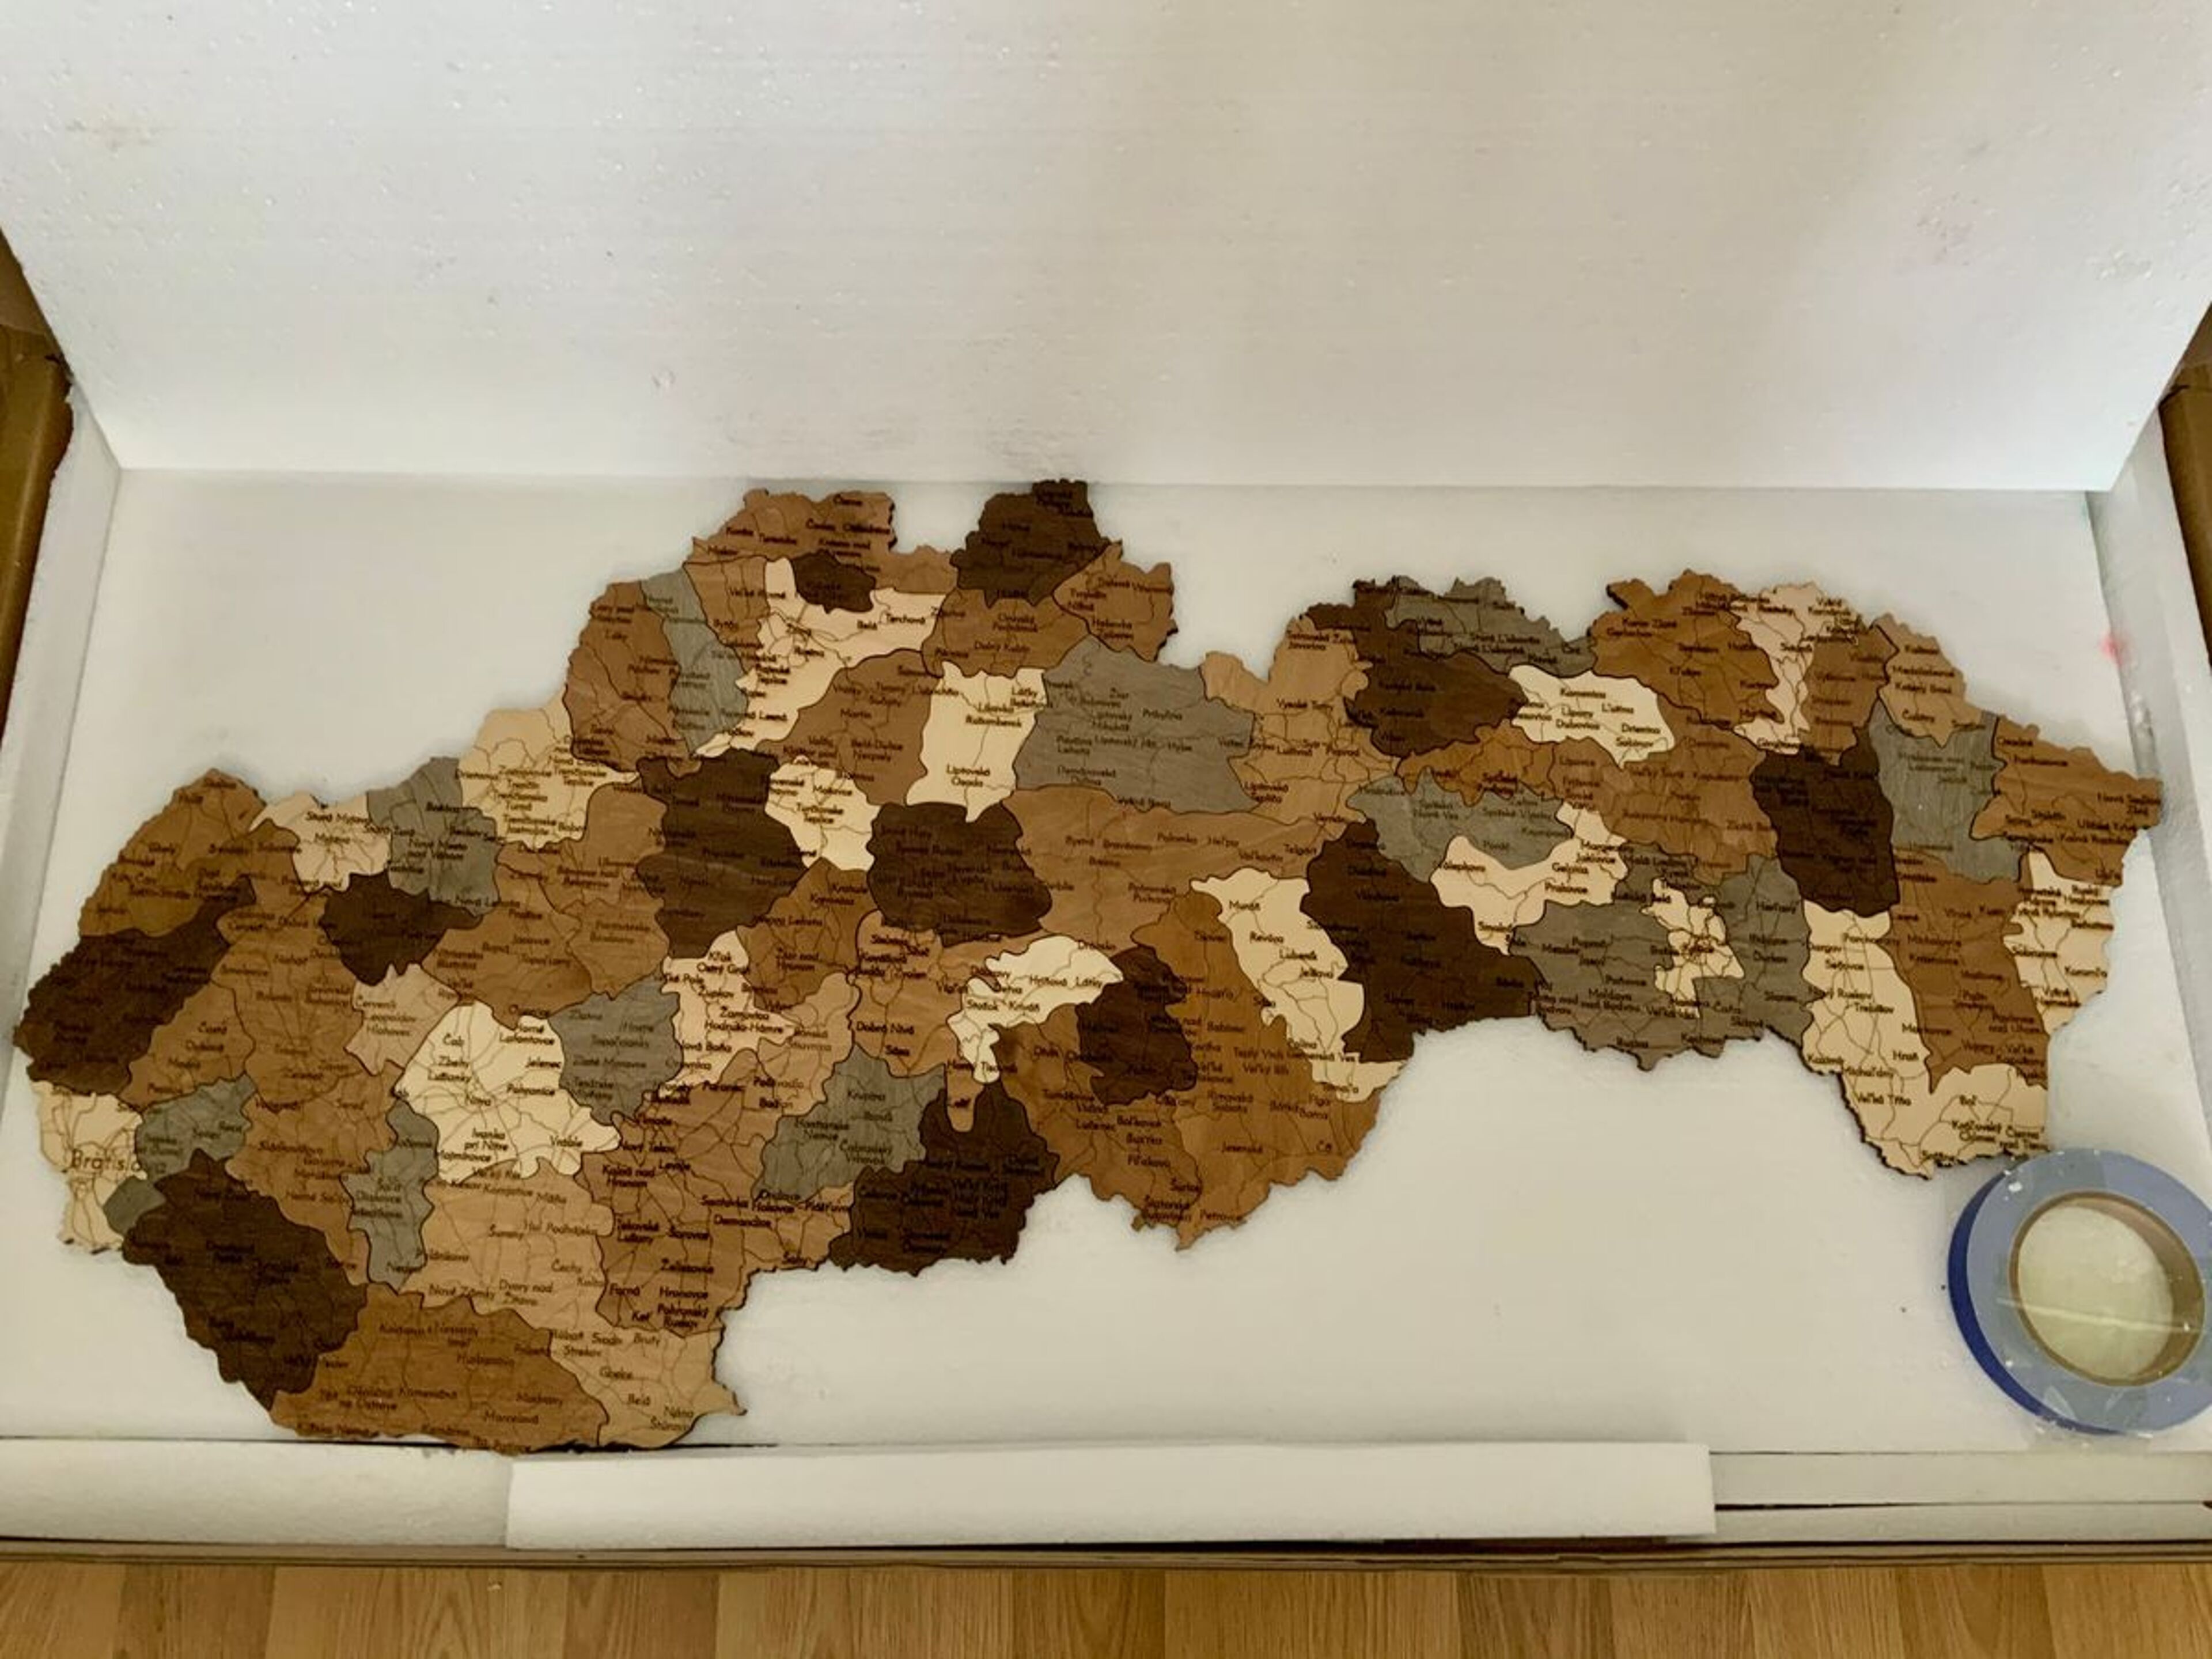 Recensione per Mappa della Slovacchia in legno - immagine da Michal B.